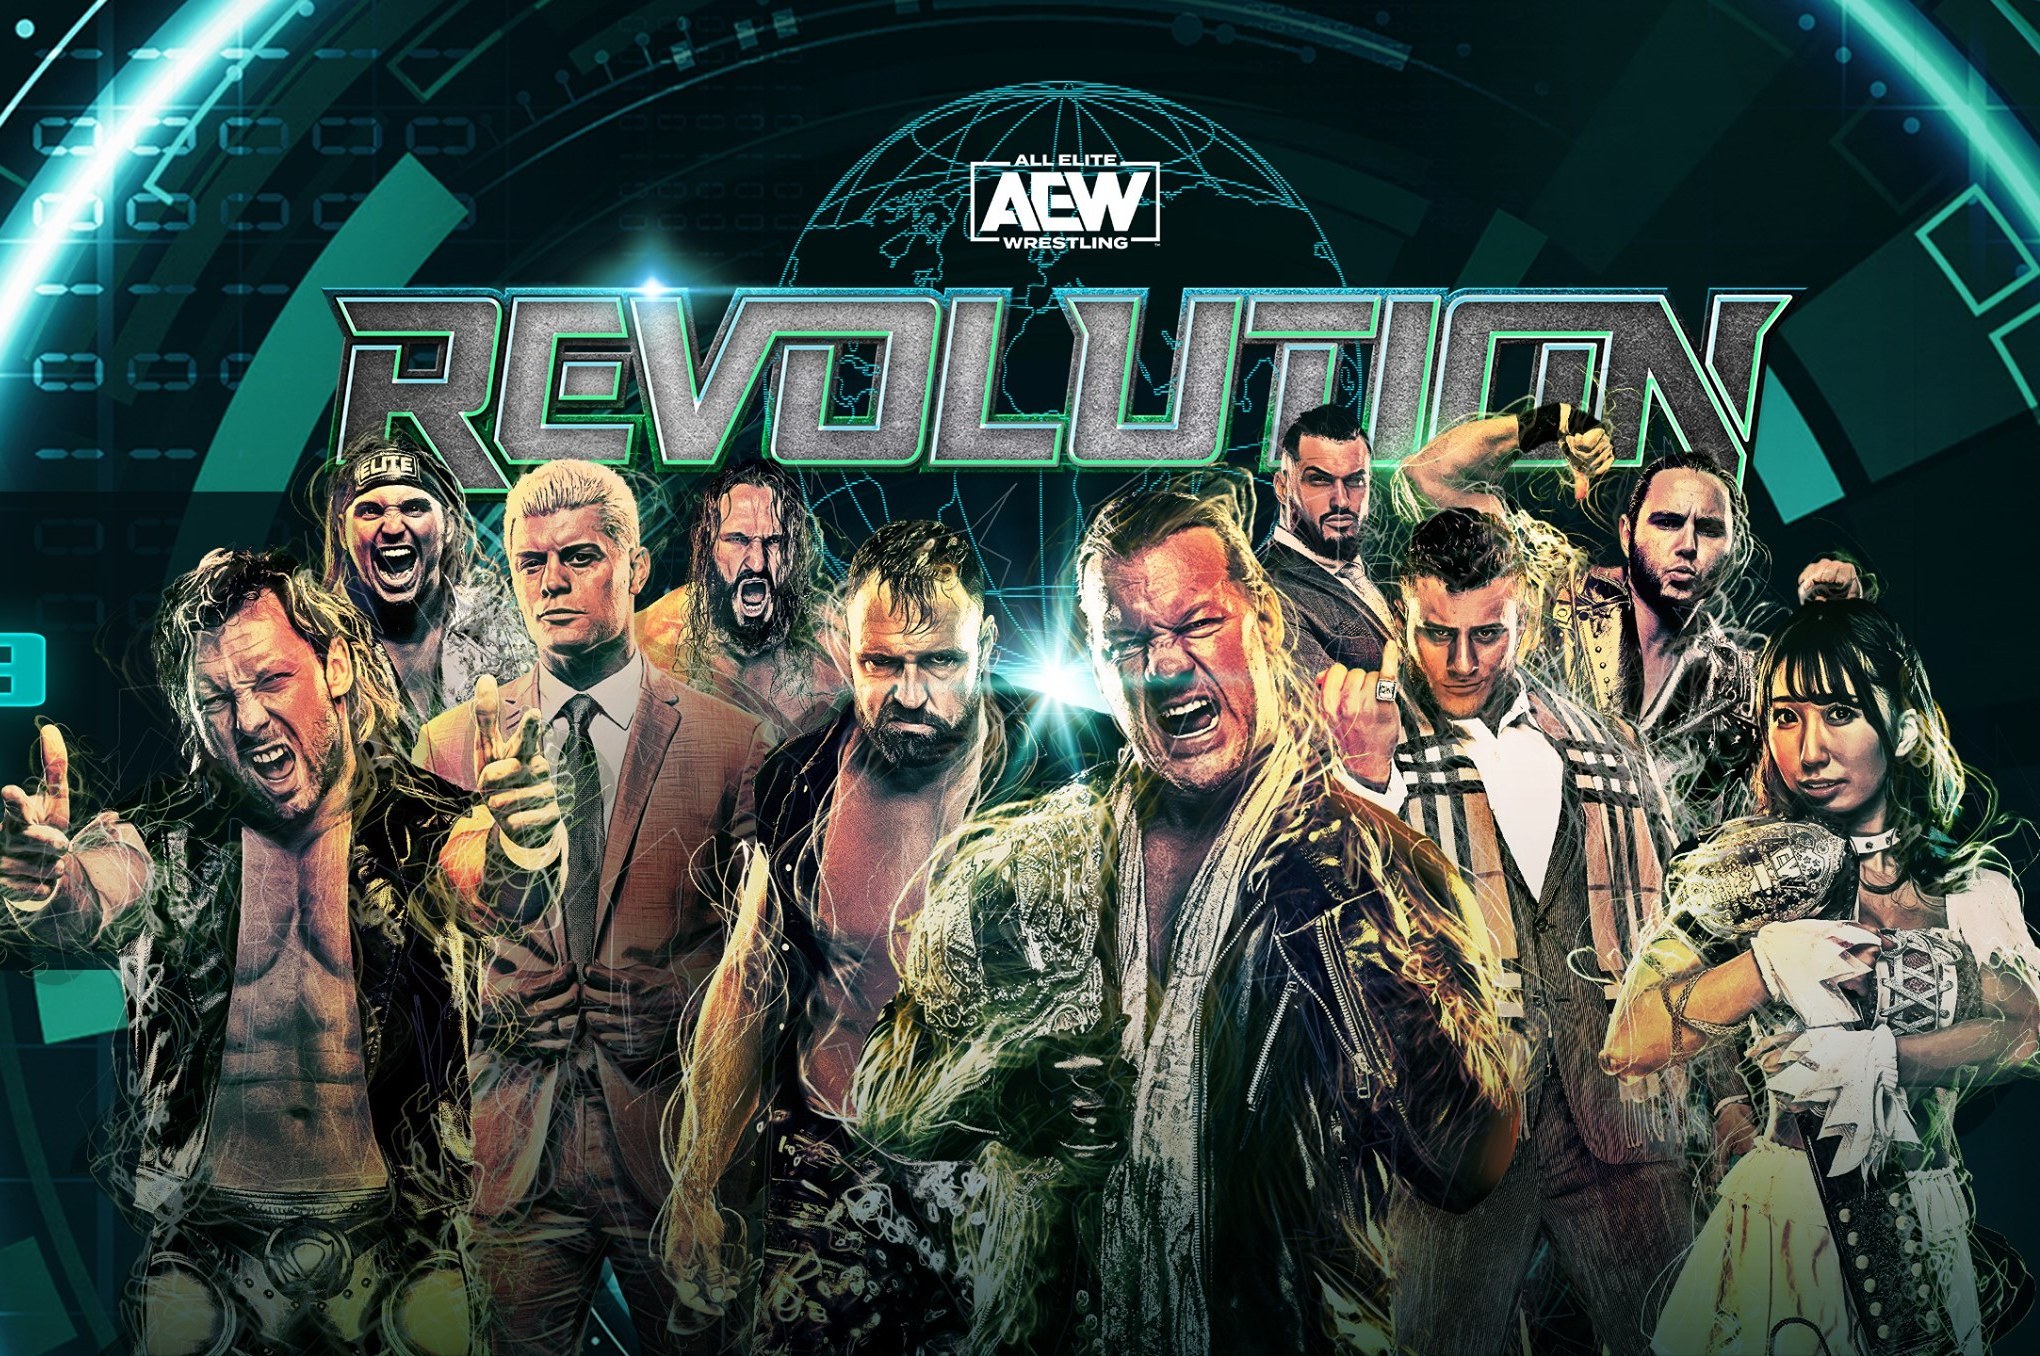 The Best All Elite Wrestling PPV so far (Revolution 2020) Review